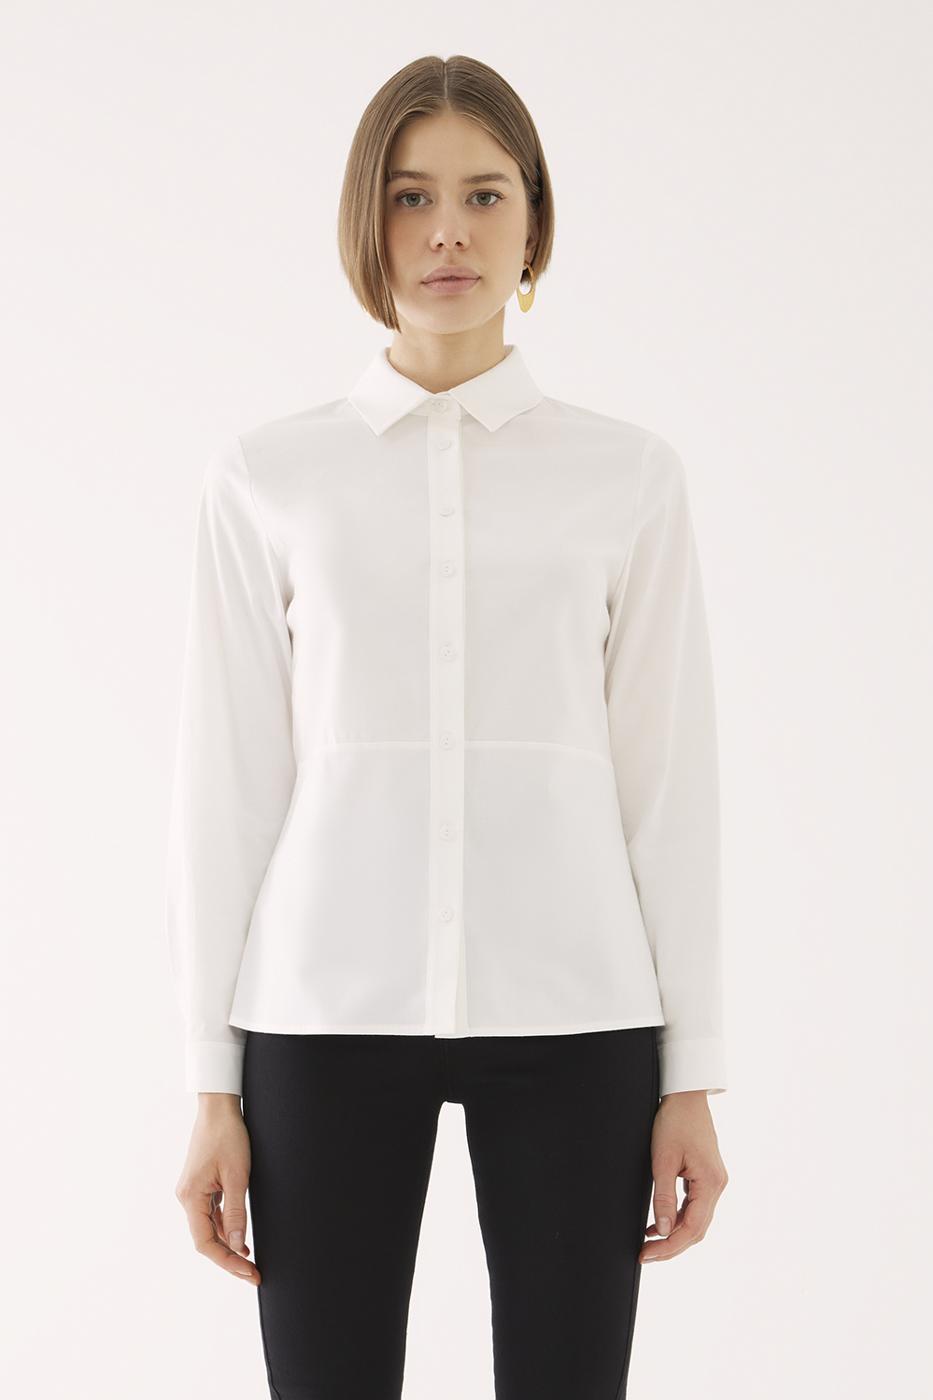 Bayan BEYAZ Elis Slim Fit Standart Boy Takma Kol Gömlek Yaka Beyaz Renk Kadın Gömlek